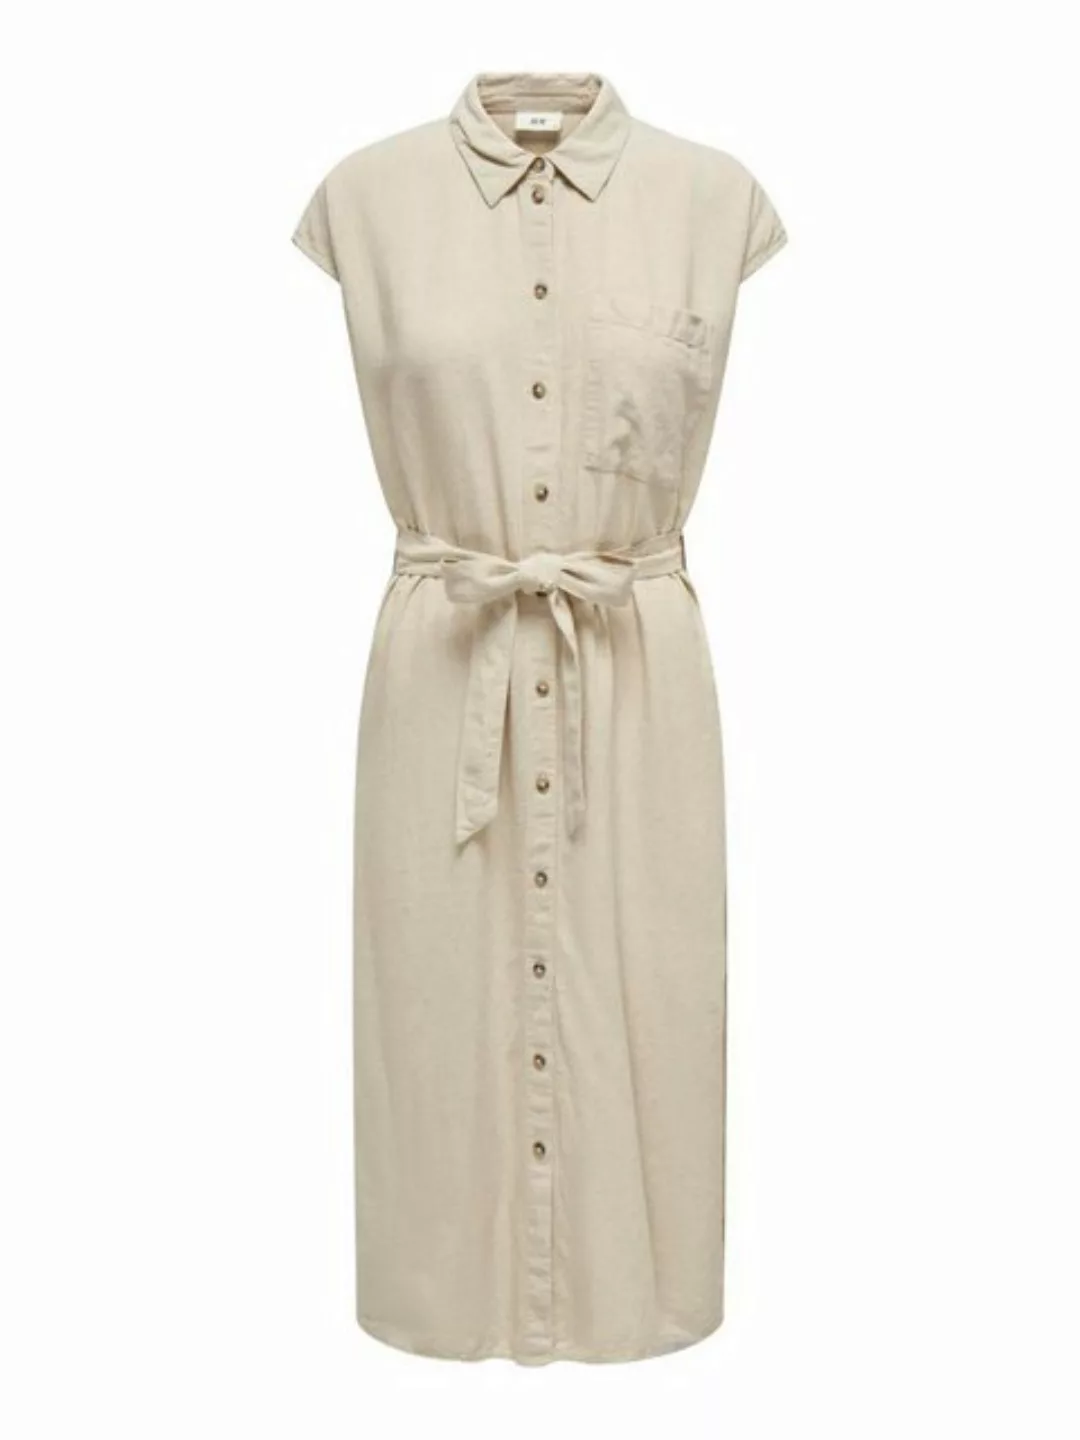 JACQUELINE de YONG Shirtkleid Kleid Midi mit Gürtel Knopfleiste Brusttasche günstig online kaufen